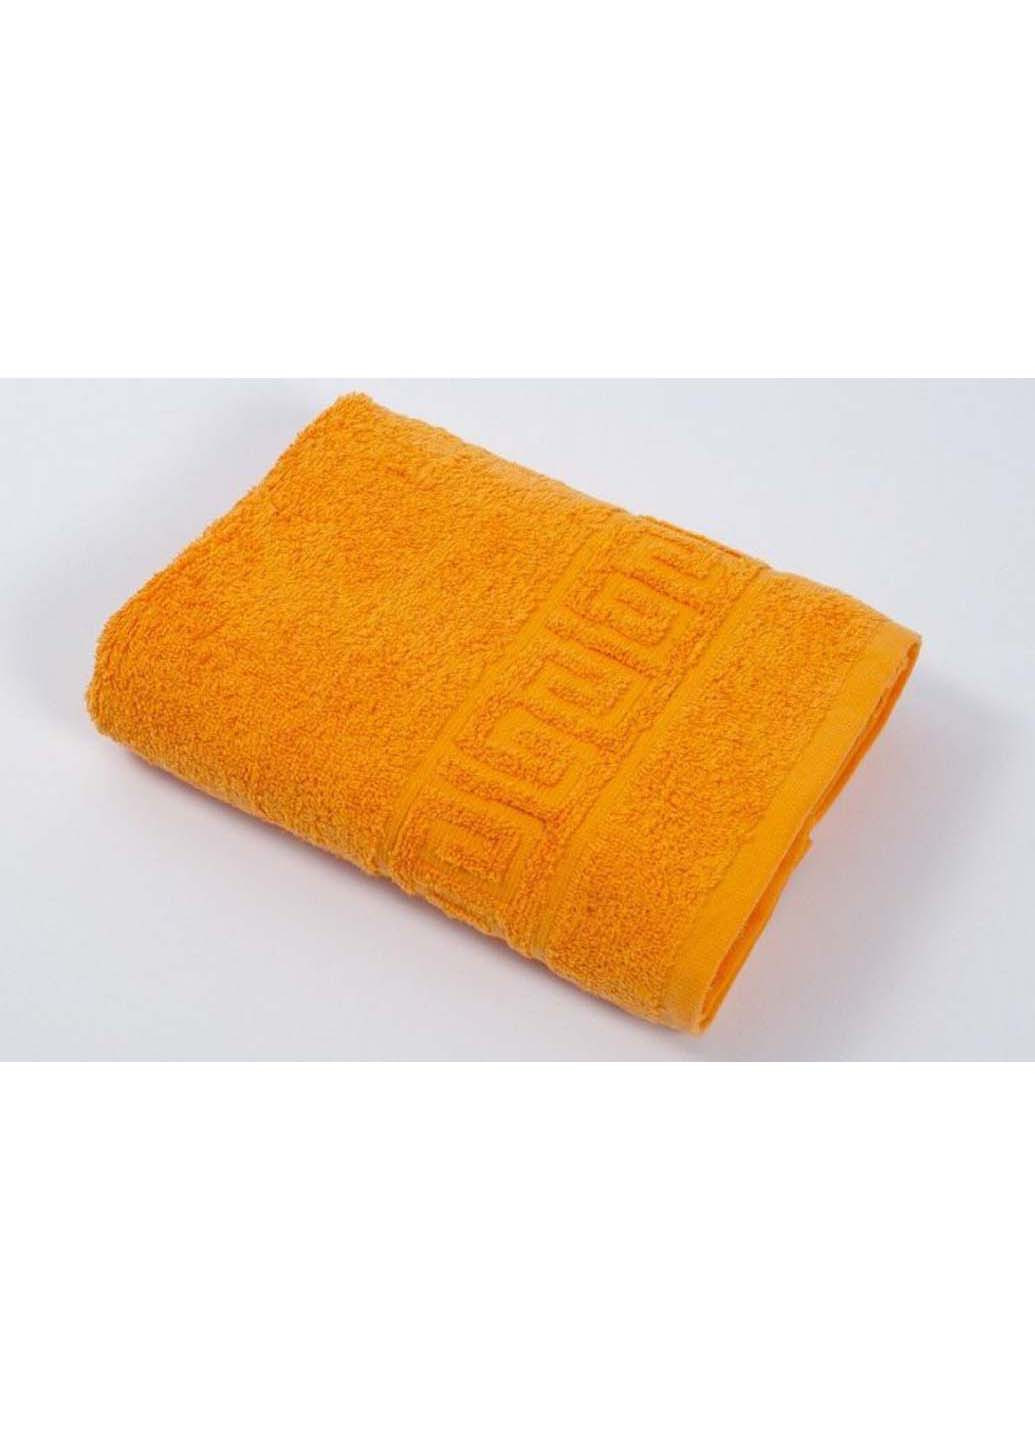 Ashgabat Dokma Toplumy рушник для обличчя помаранчевий виробництво - Туркменістан